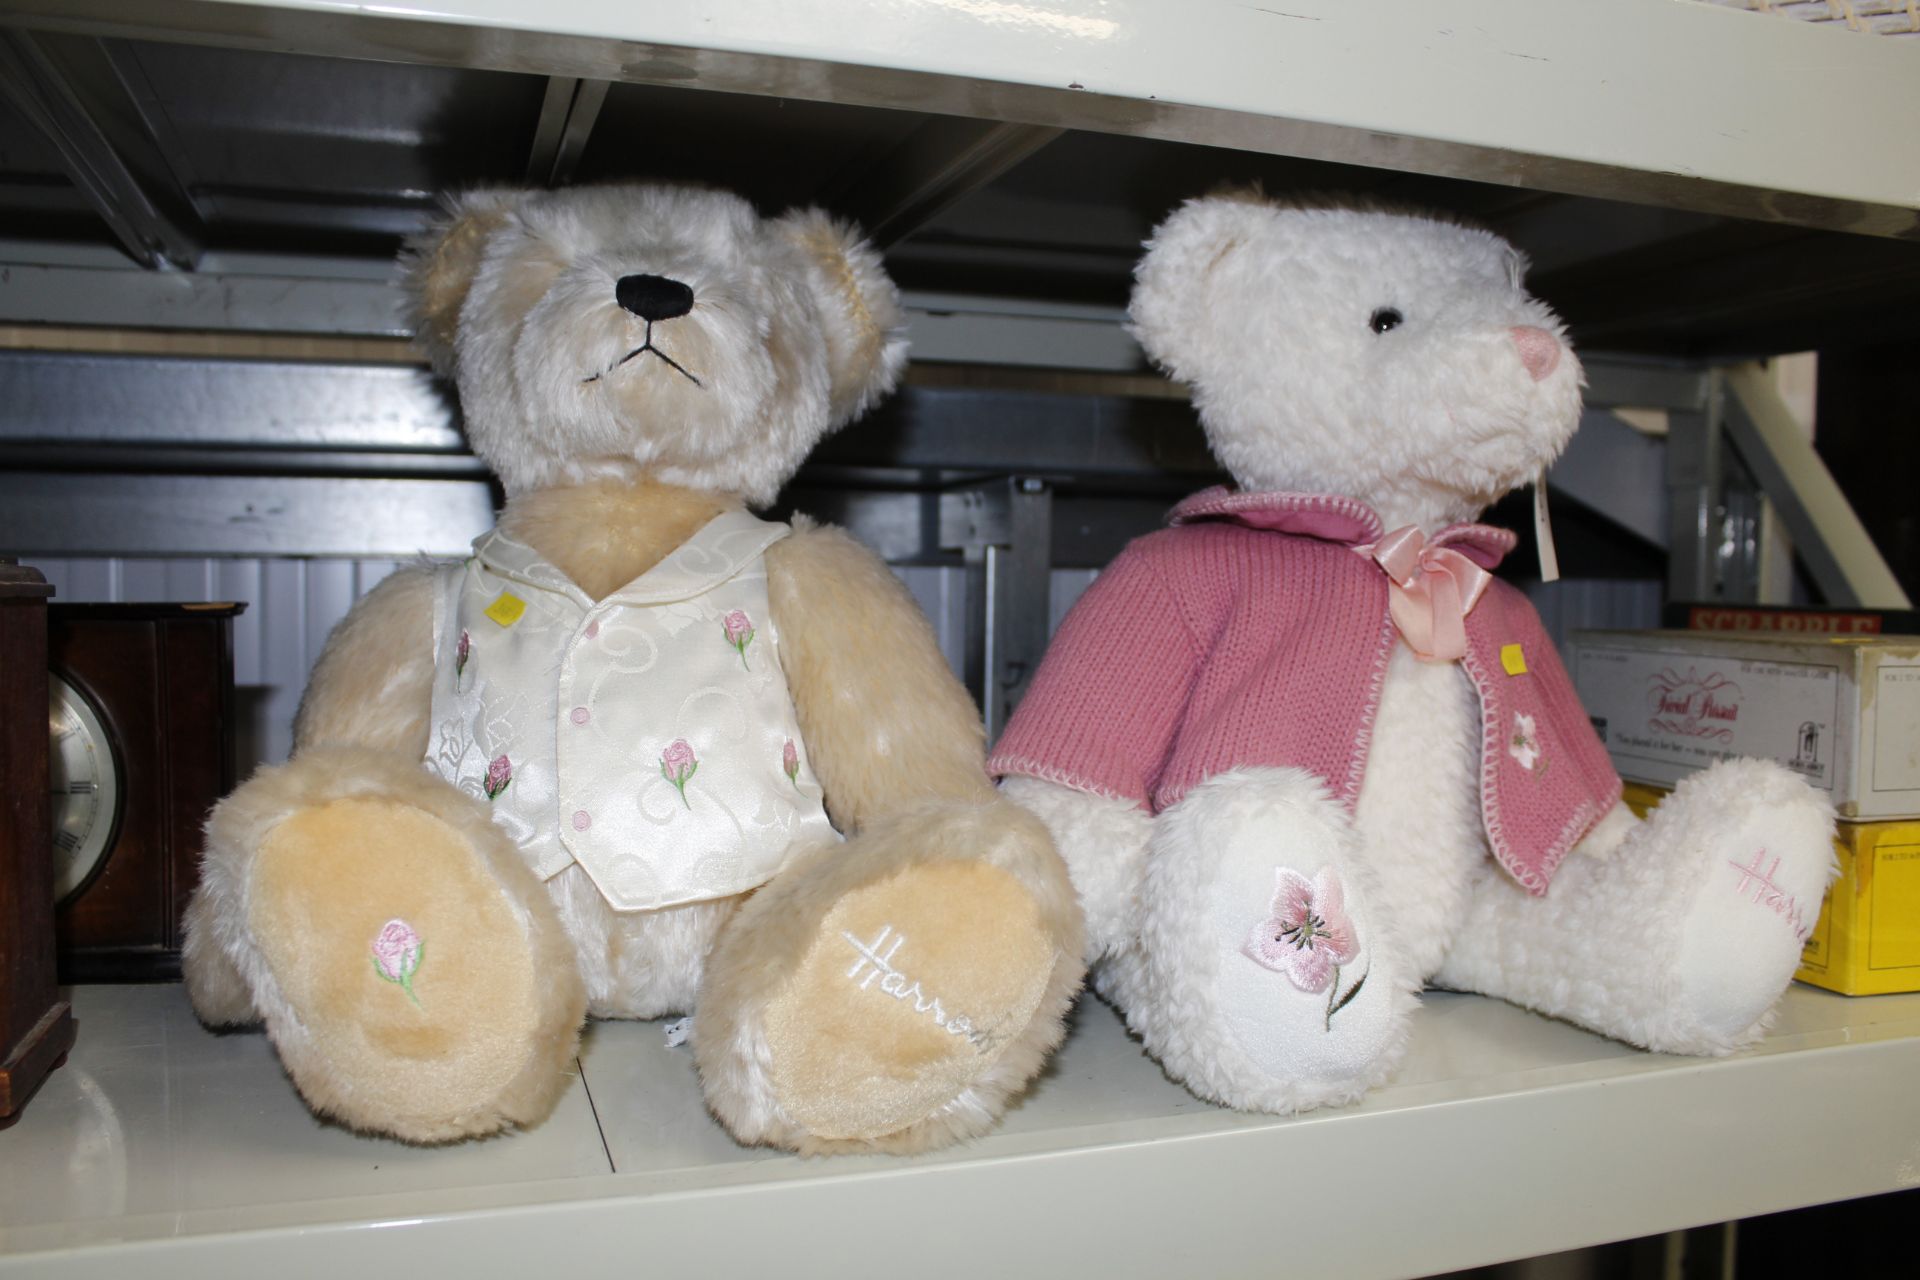 Two Harrods teddy bears